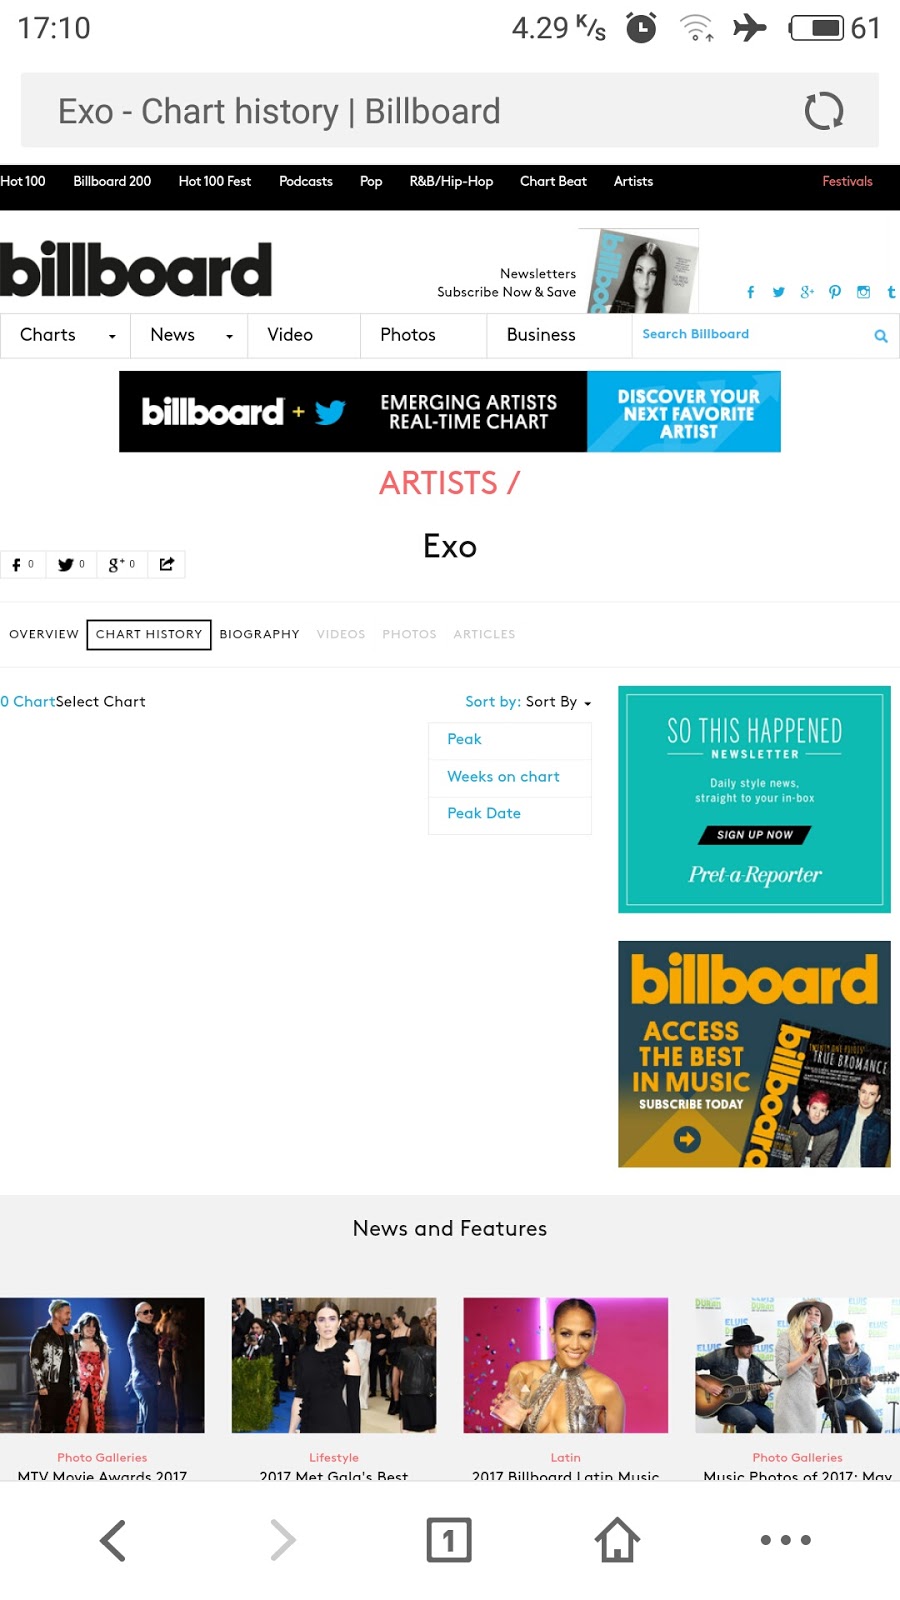 Exo Billboard Chart History